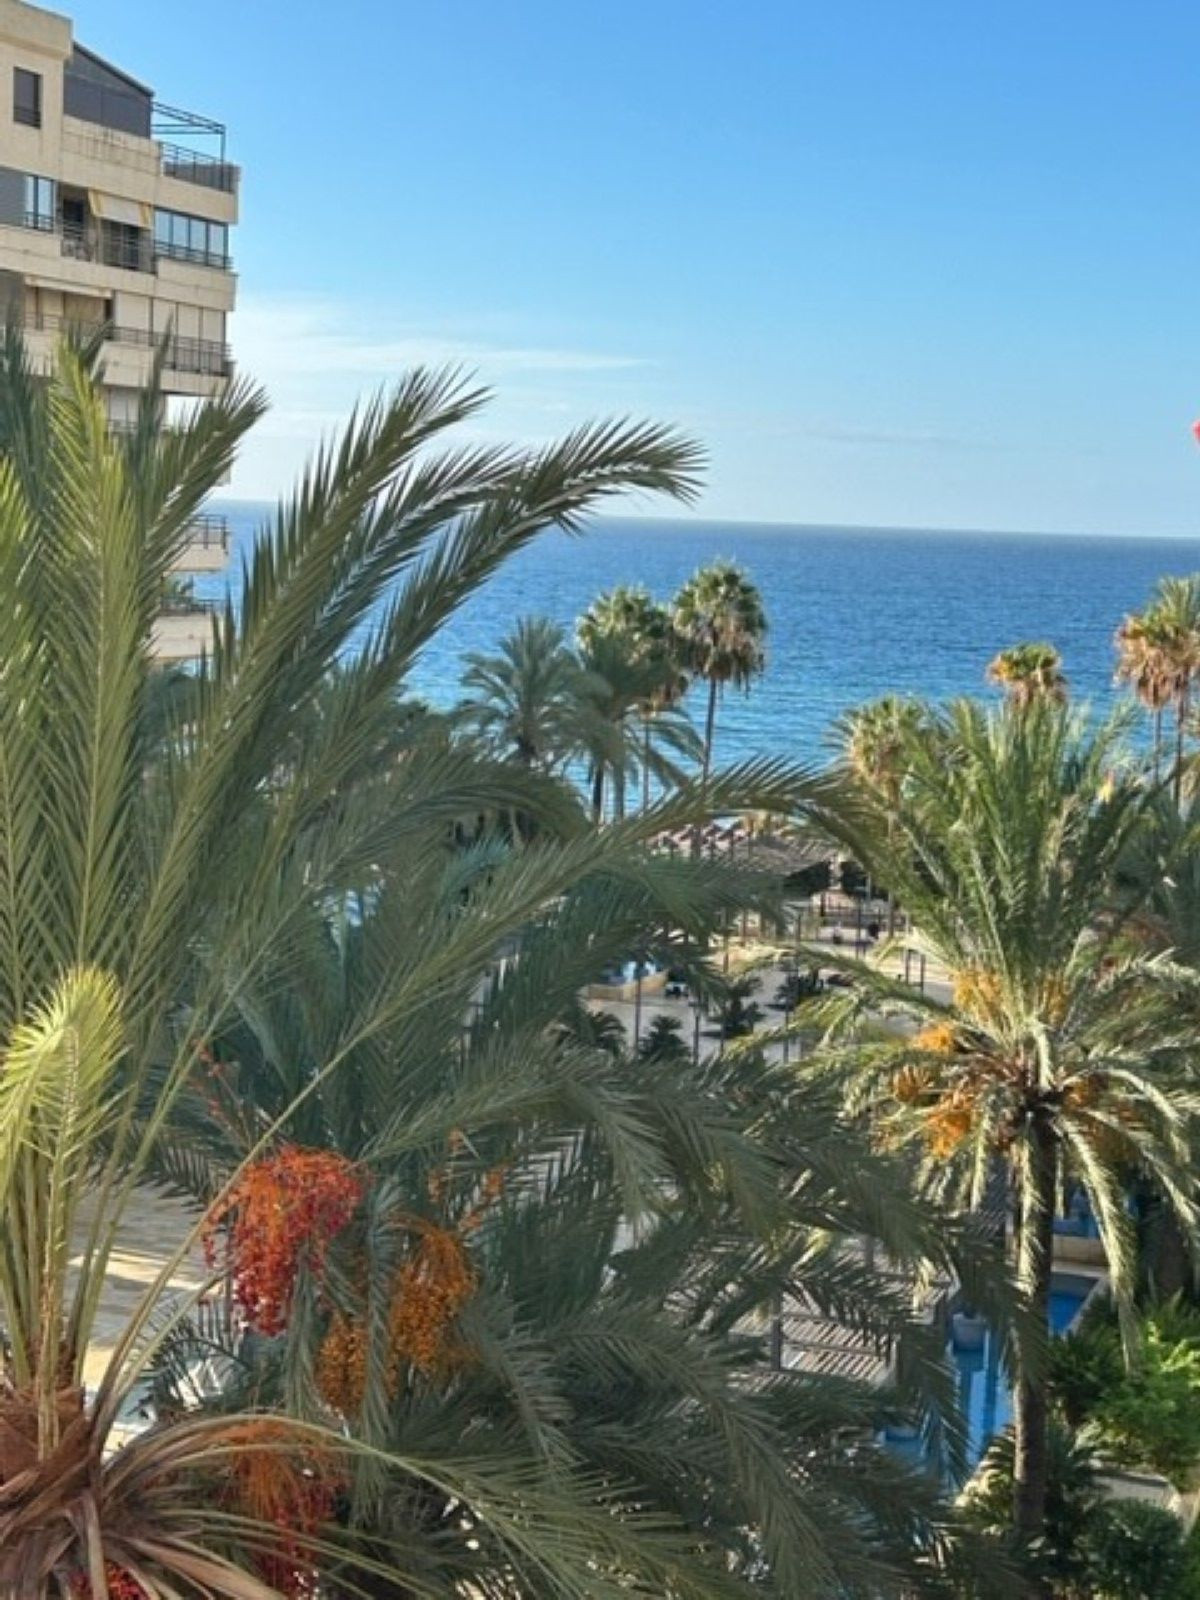 						Apartamento  Ático Dúplex
													en venta 
																			 en Marbella
					